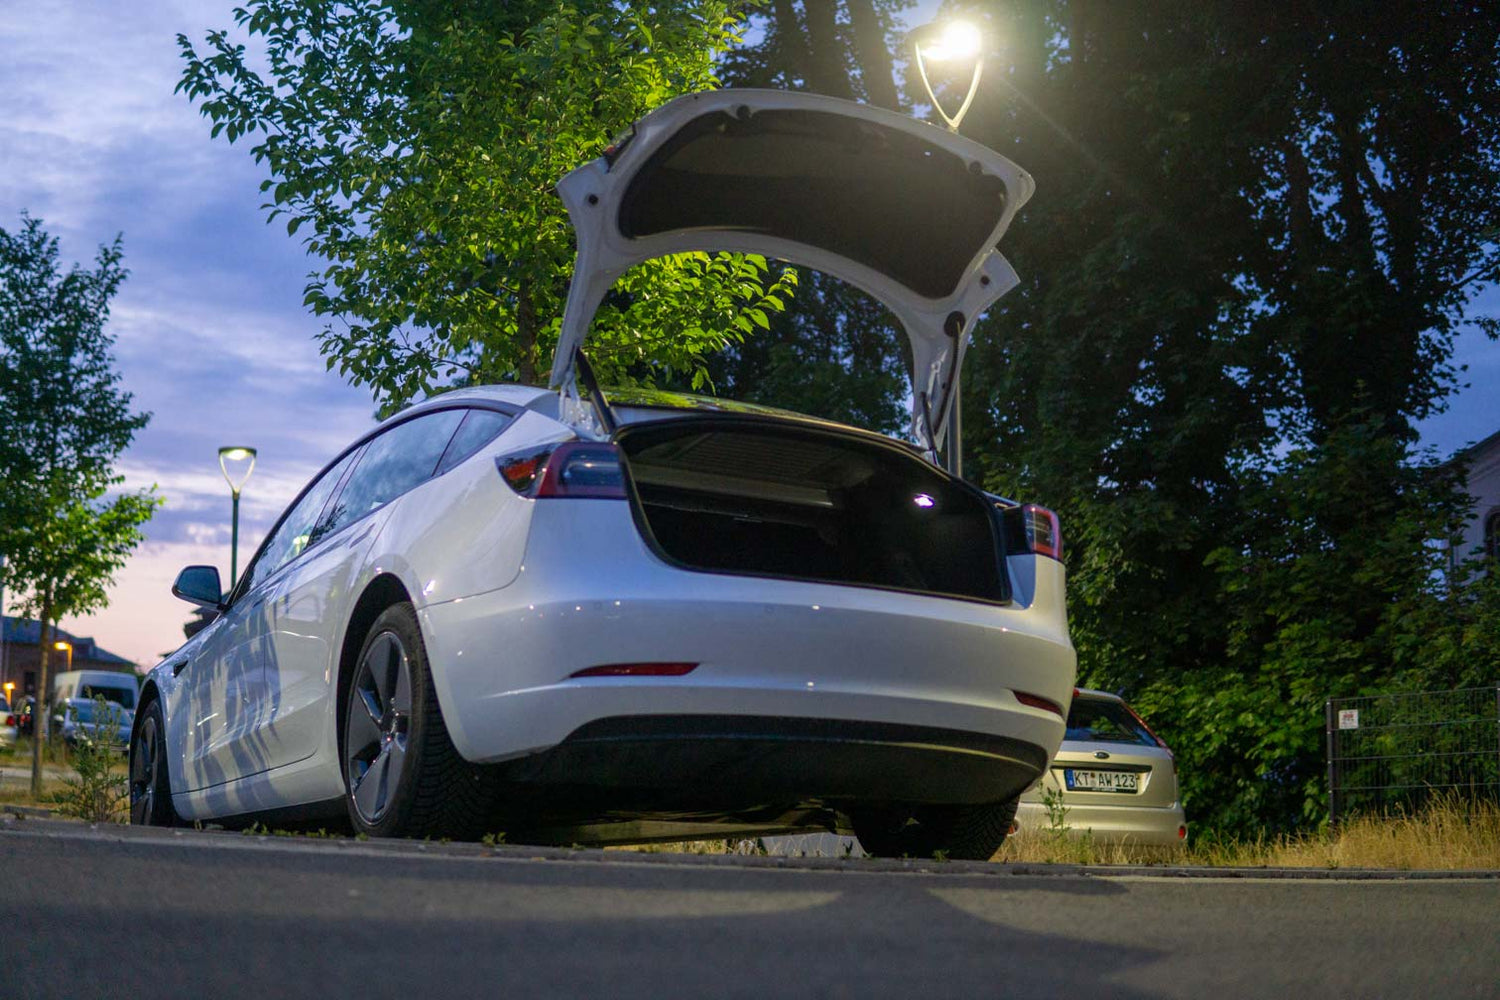 Auto vorne Kofferraum haube Wasserst reifen vorne Klimaanlage Lufteinlass  insekten sichere Netz schutzhülle für Tesla Modell y 2013-2017